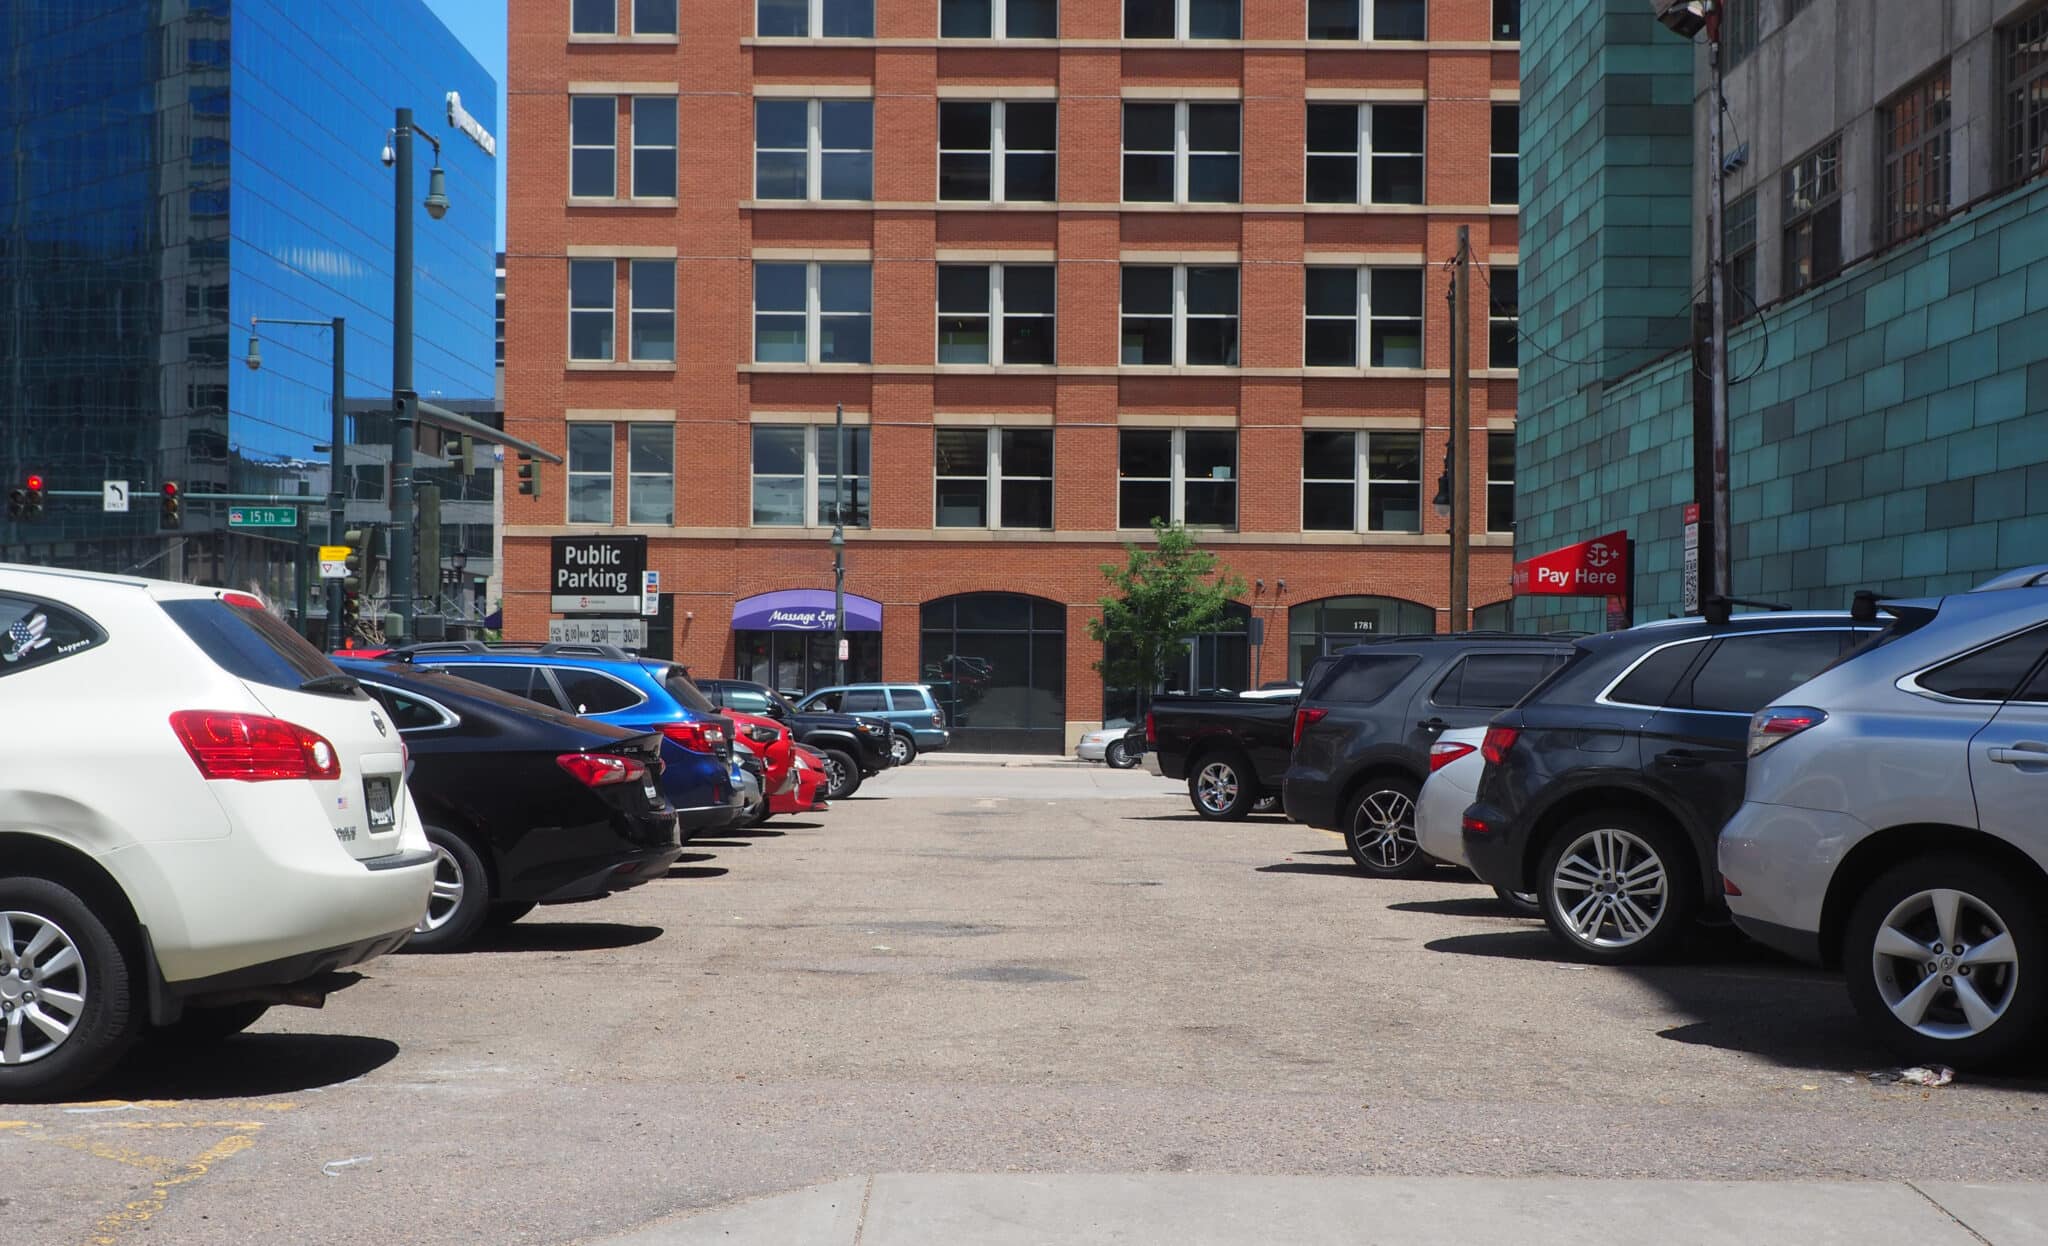 Hotels planned for Denver parking lots